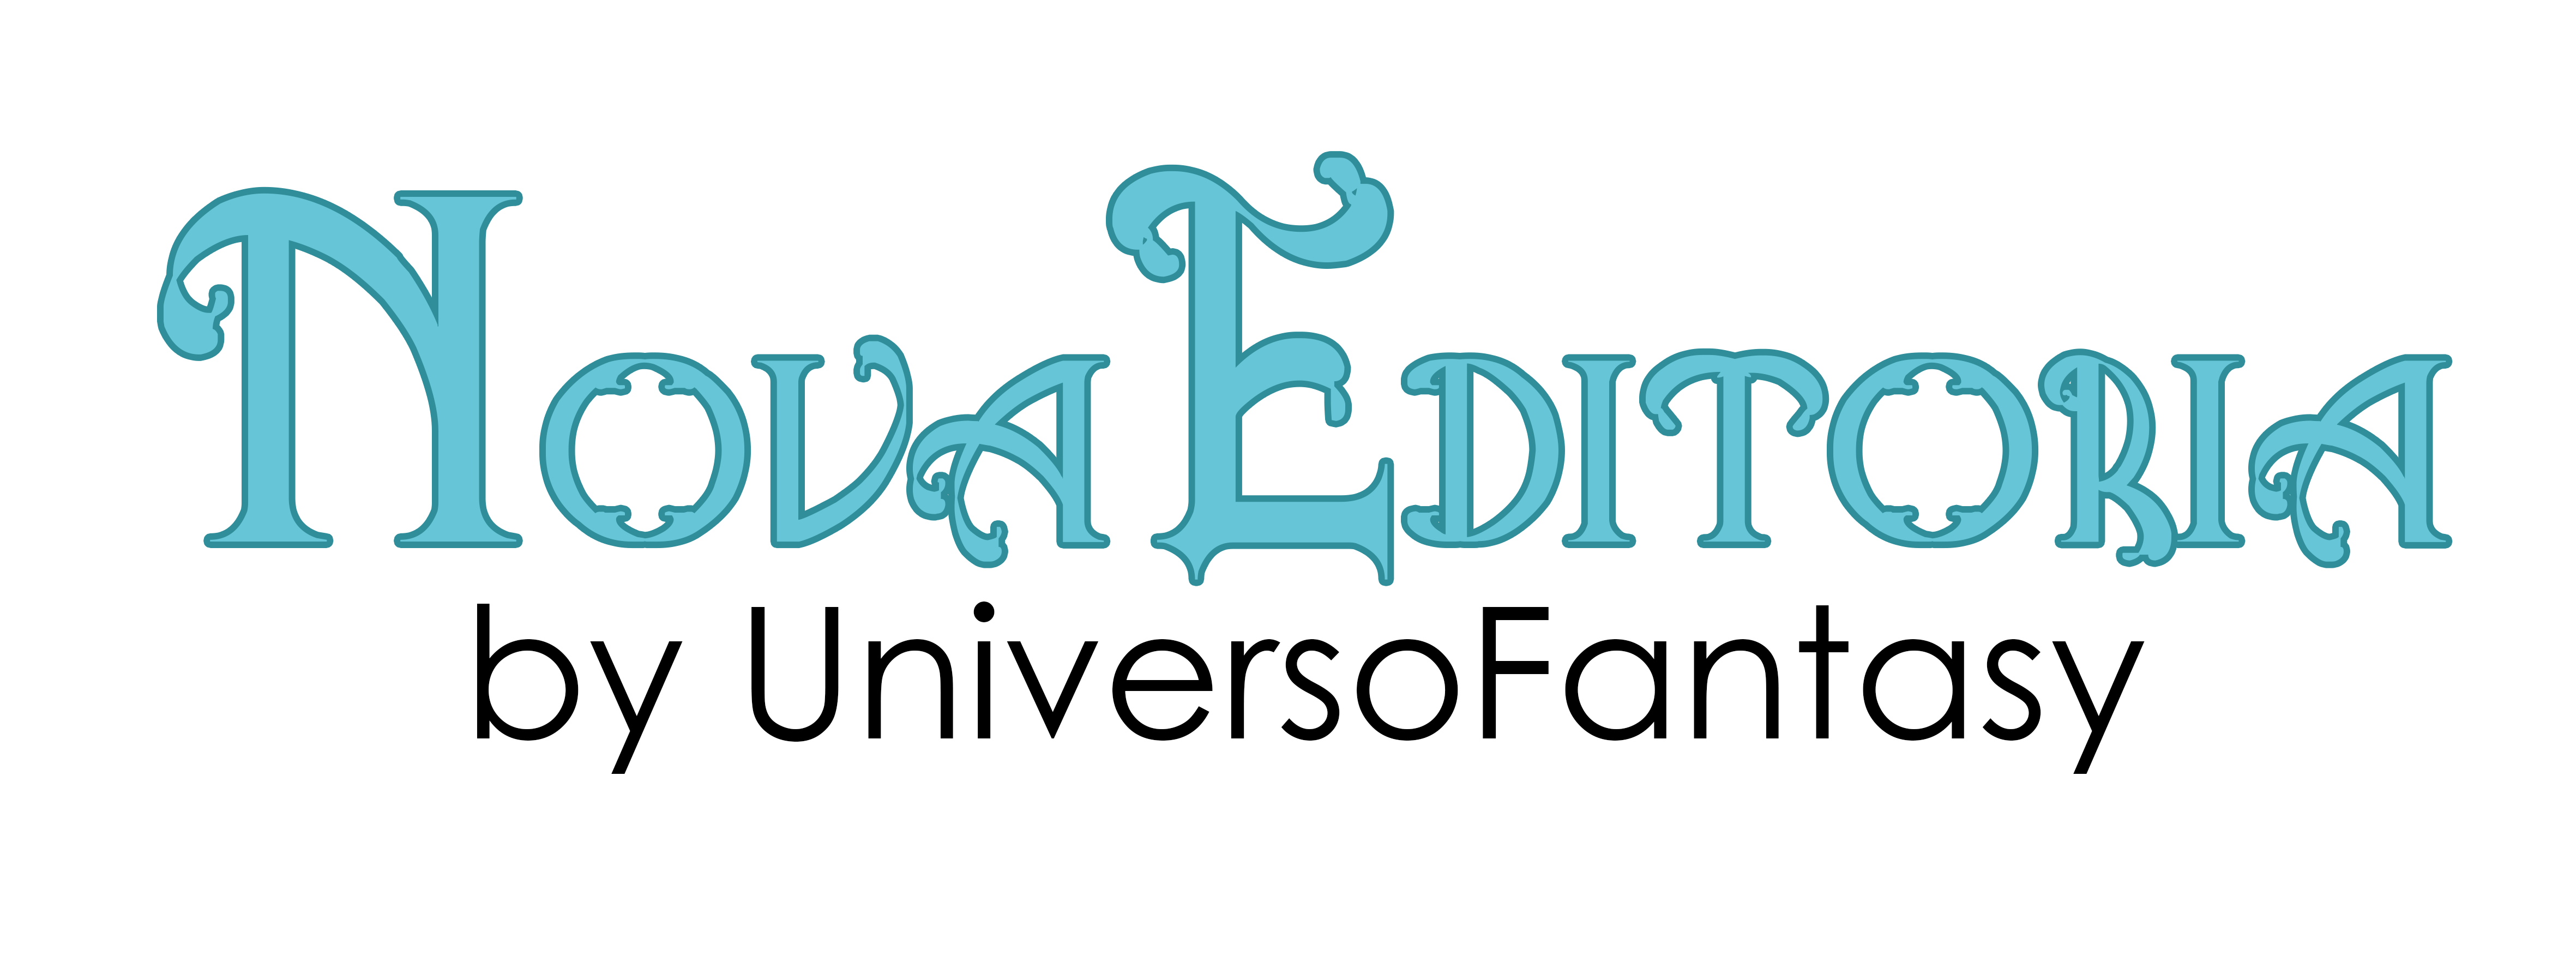 Nova Editoria by Universo Fantasy